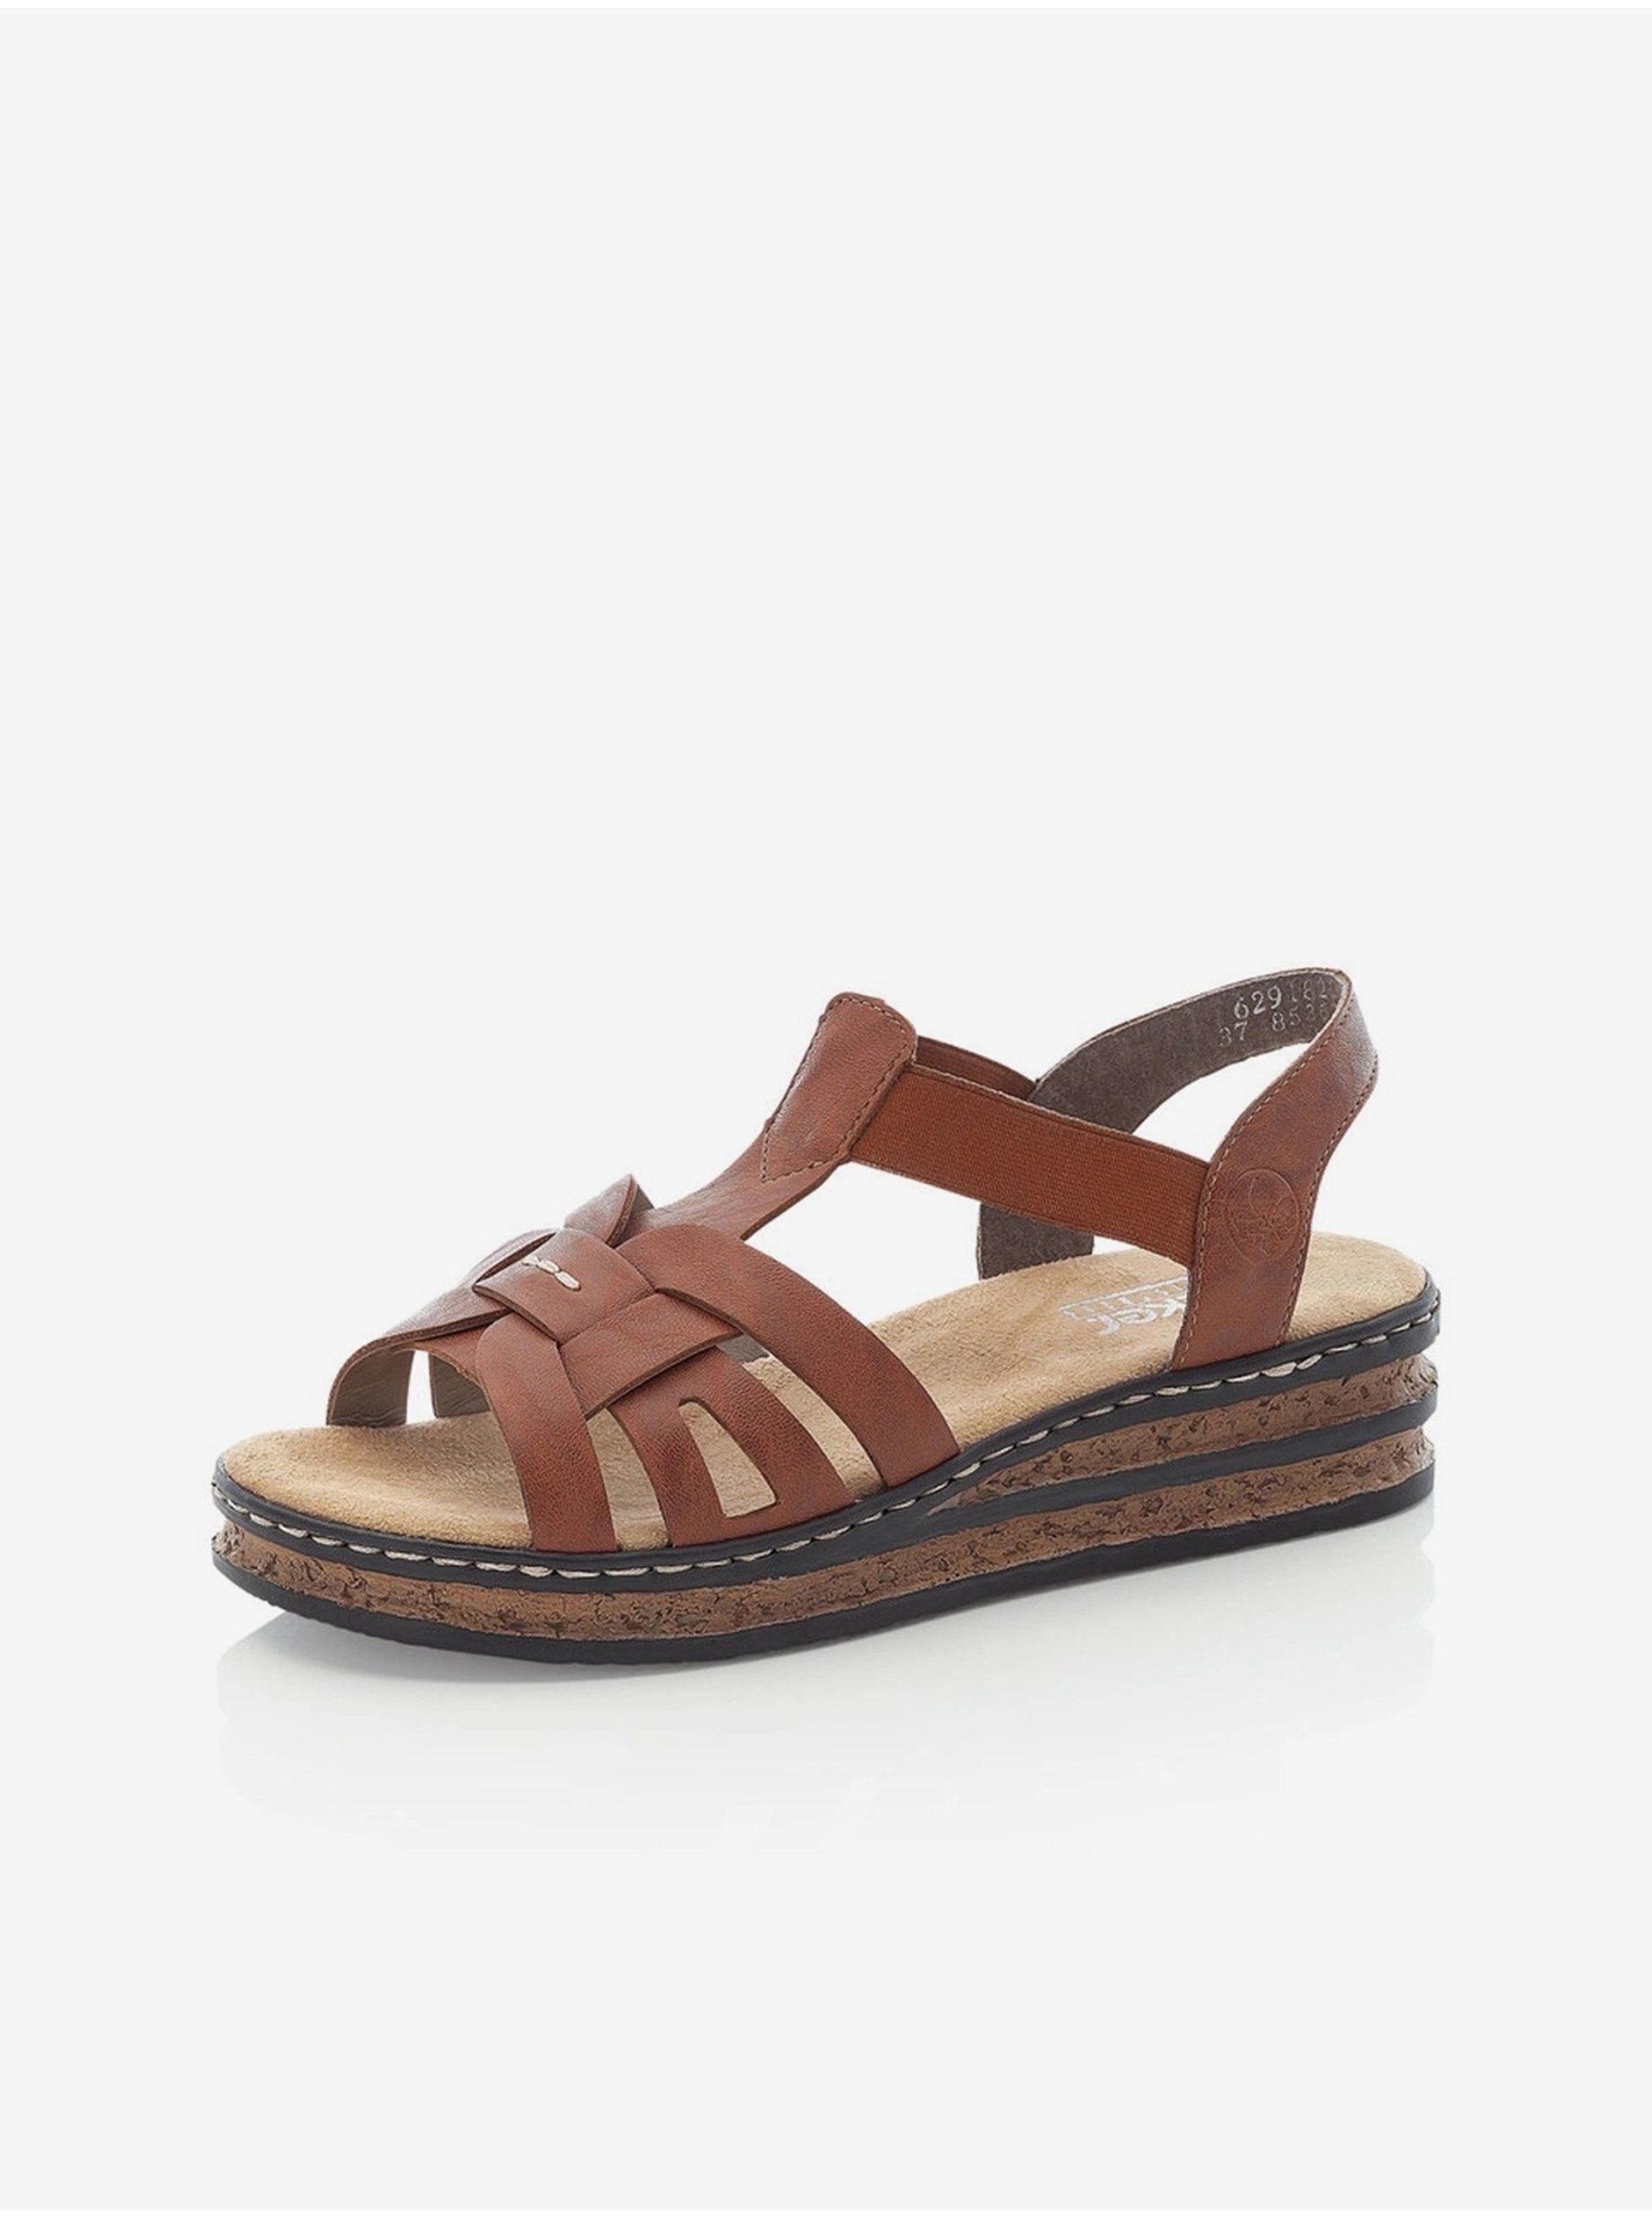 E-shop Sandále pre ženy Rieker - hnedá, svetlohnedá